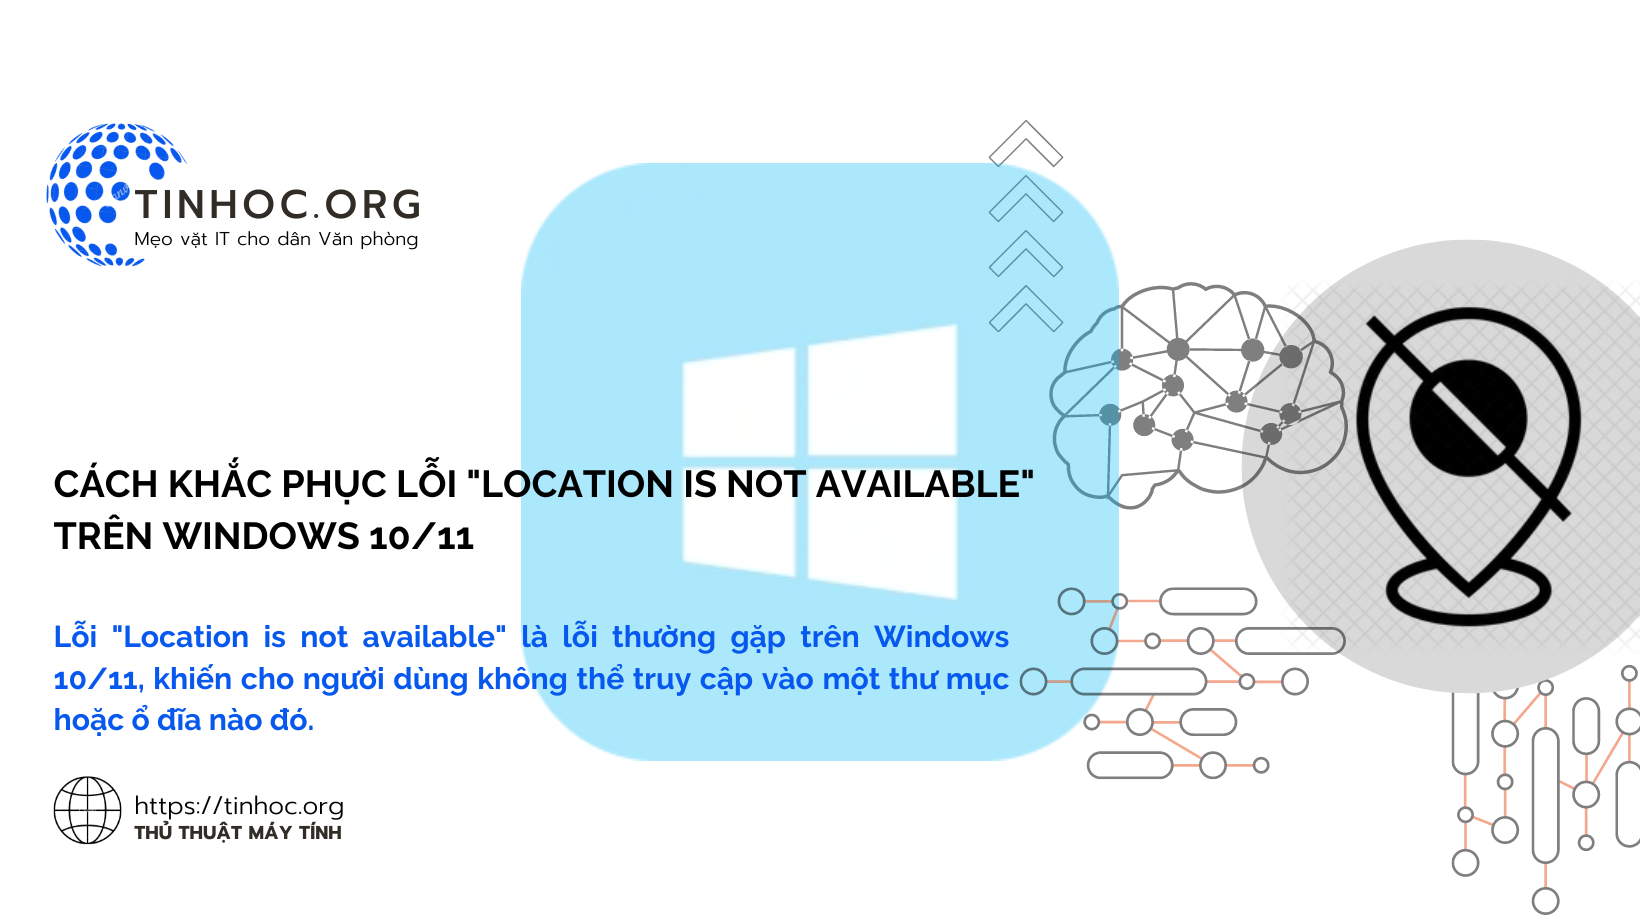 Lỗi "Location is not available" là lỗi thường gặp trên Windows 10/11, khiến cho người dùng không thể truy cập vào một thư mục hoặc ổ đĩa nào đó.